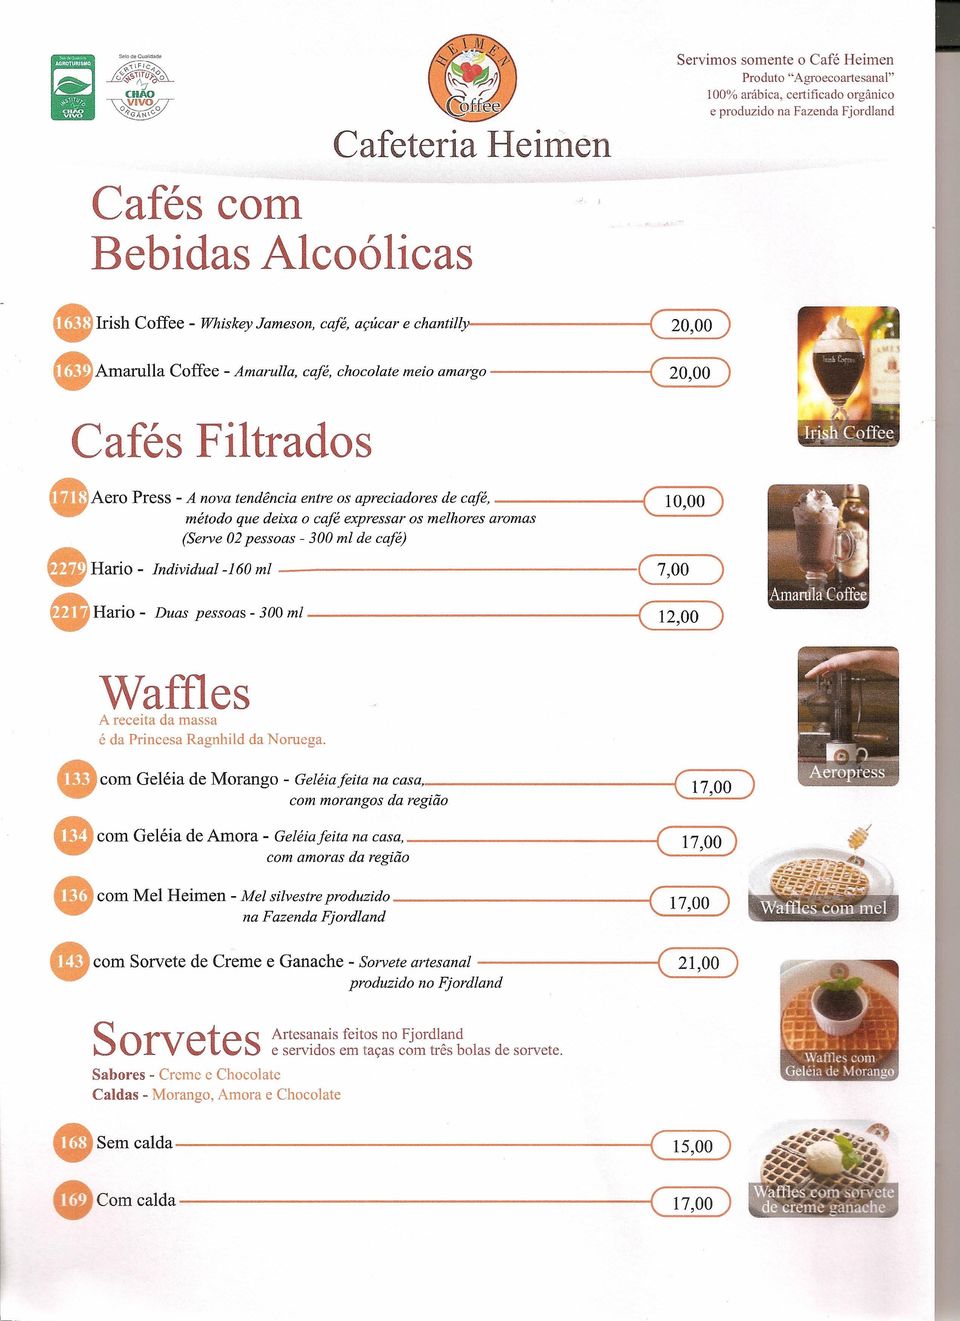 Amaruna Coffee-Amarulla, café, chocolate meio amargo ( 20,00) Cafés Filtrados eaero Press-A nova tendência entre os apreciadores de café, ---------c( 10,00) método que deixa o café expressar os